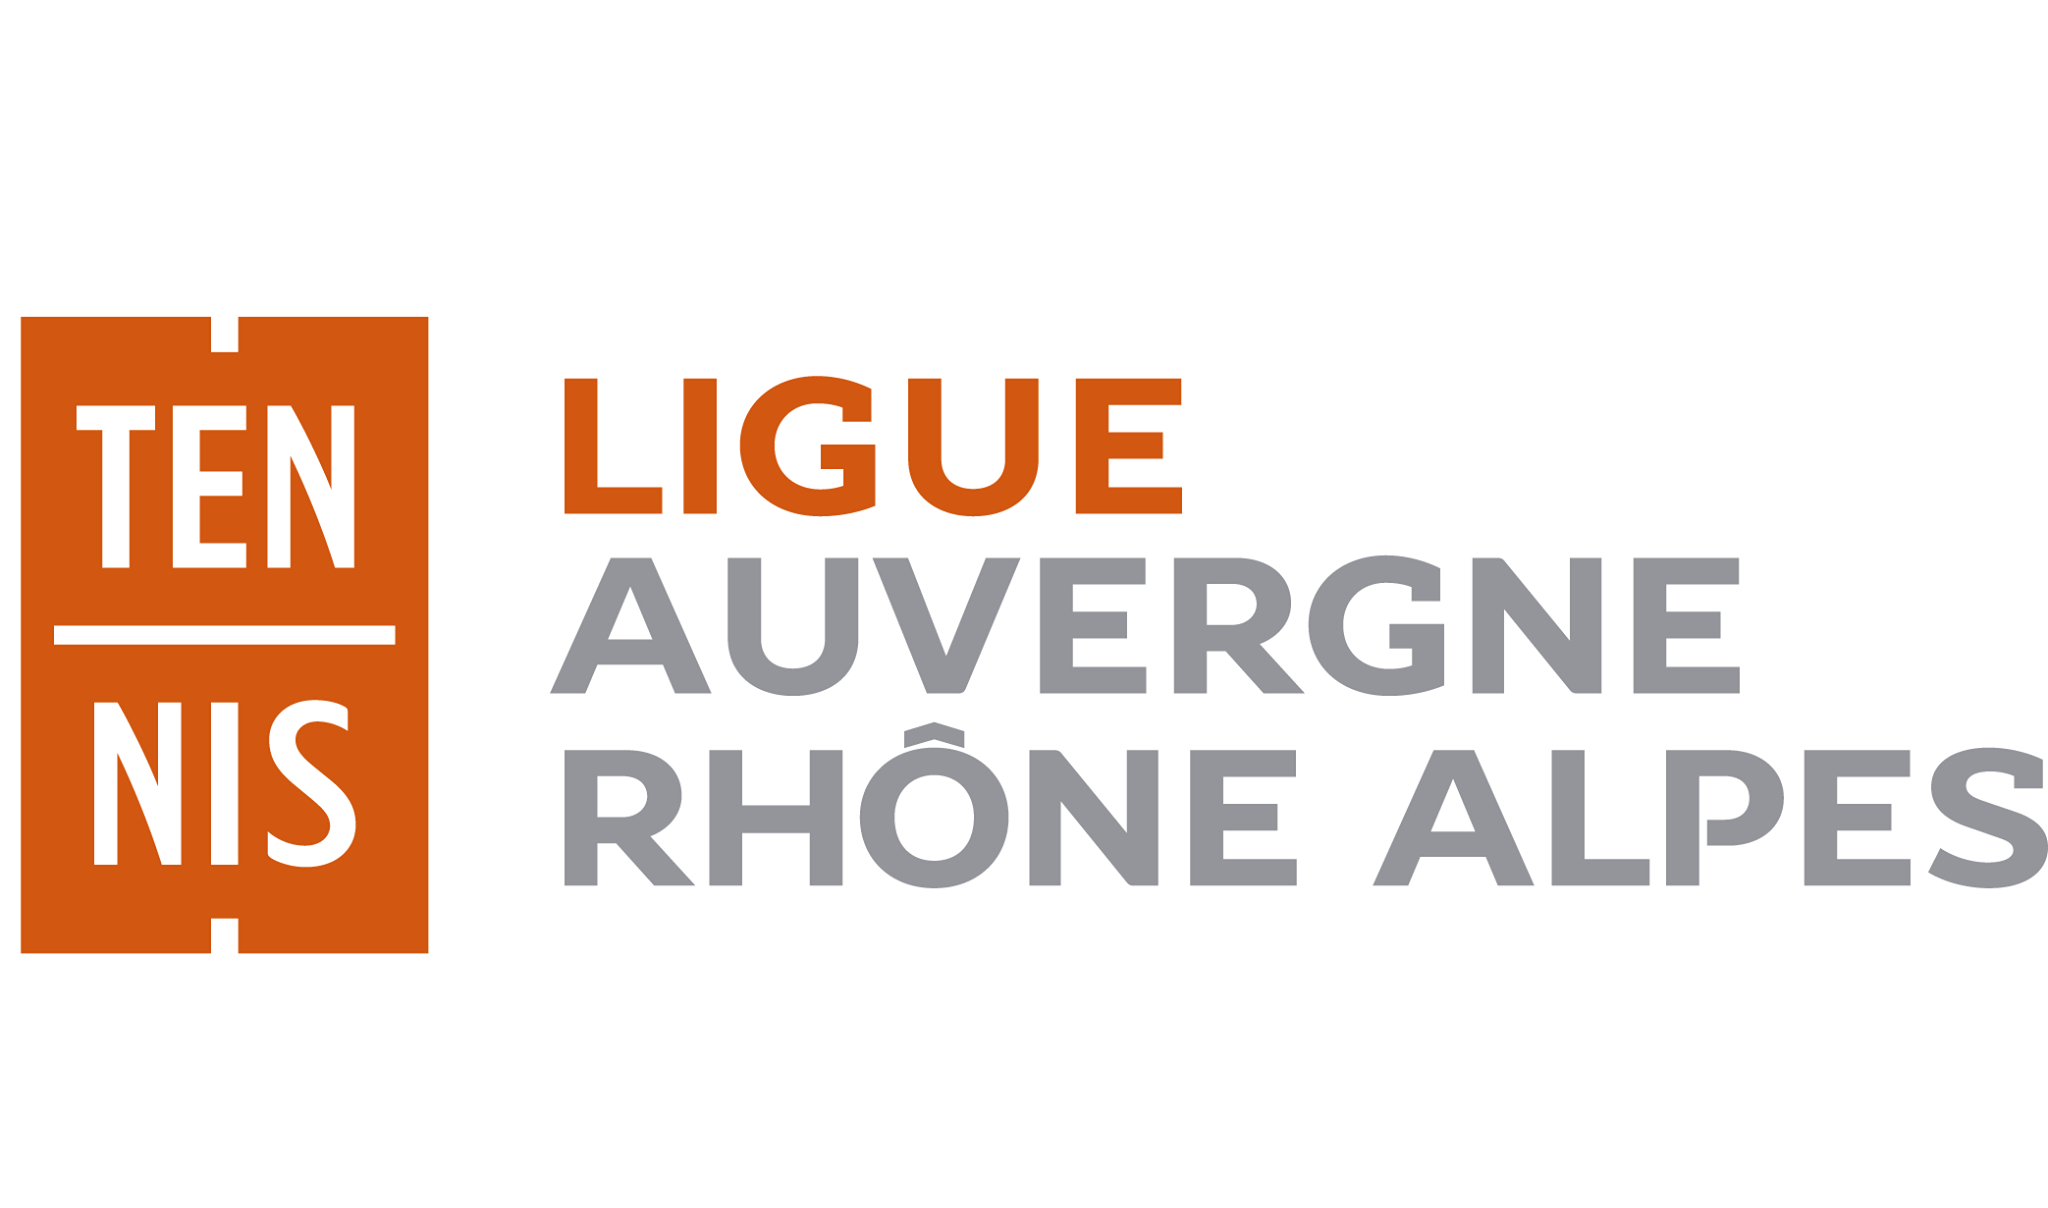 Auvergne-Rhône-Alpes-liiga rekrytoi!